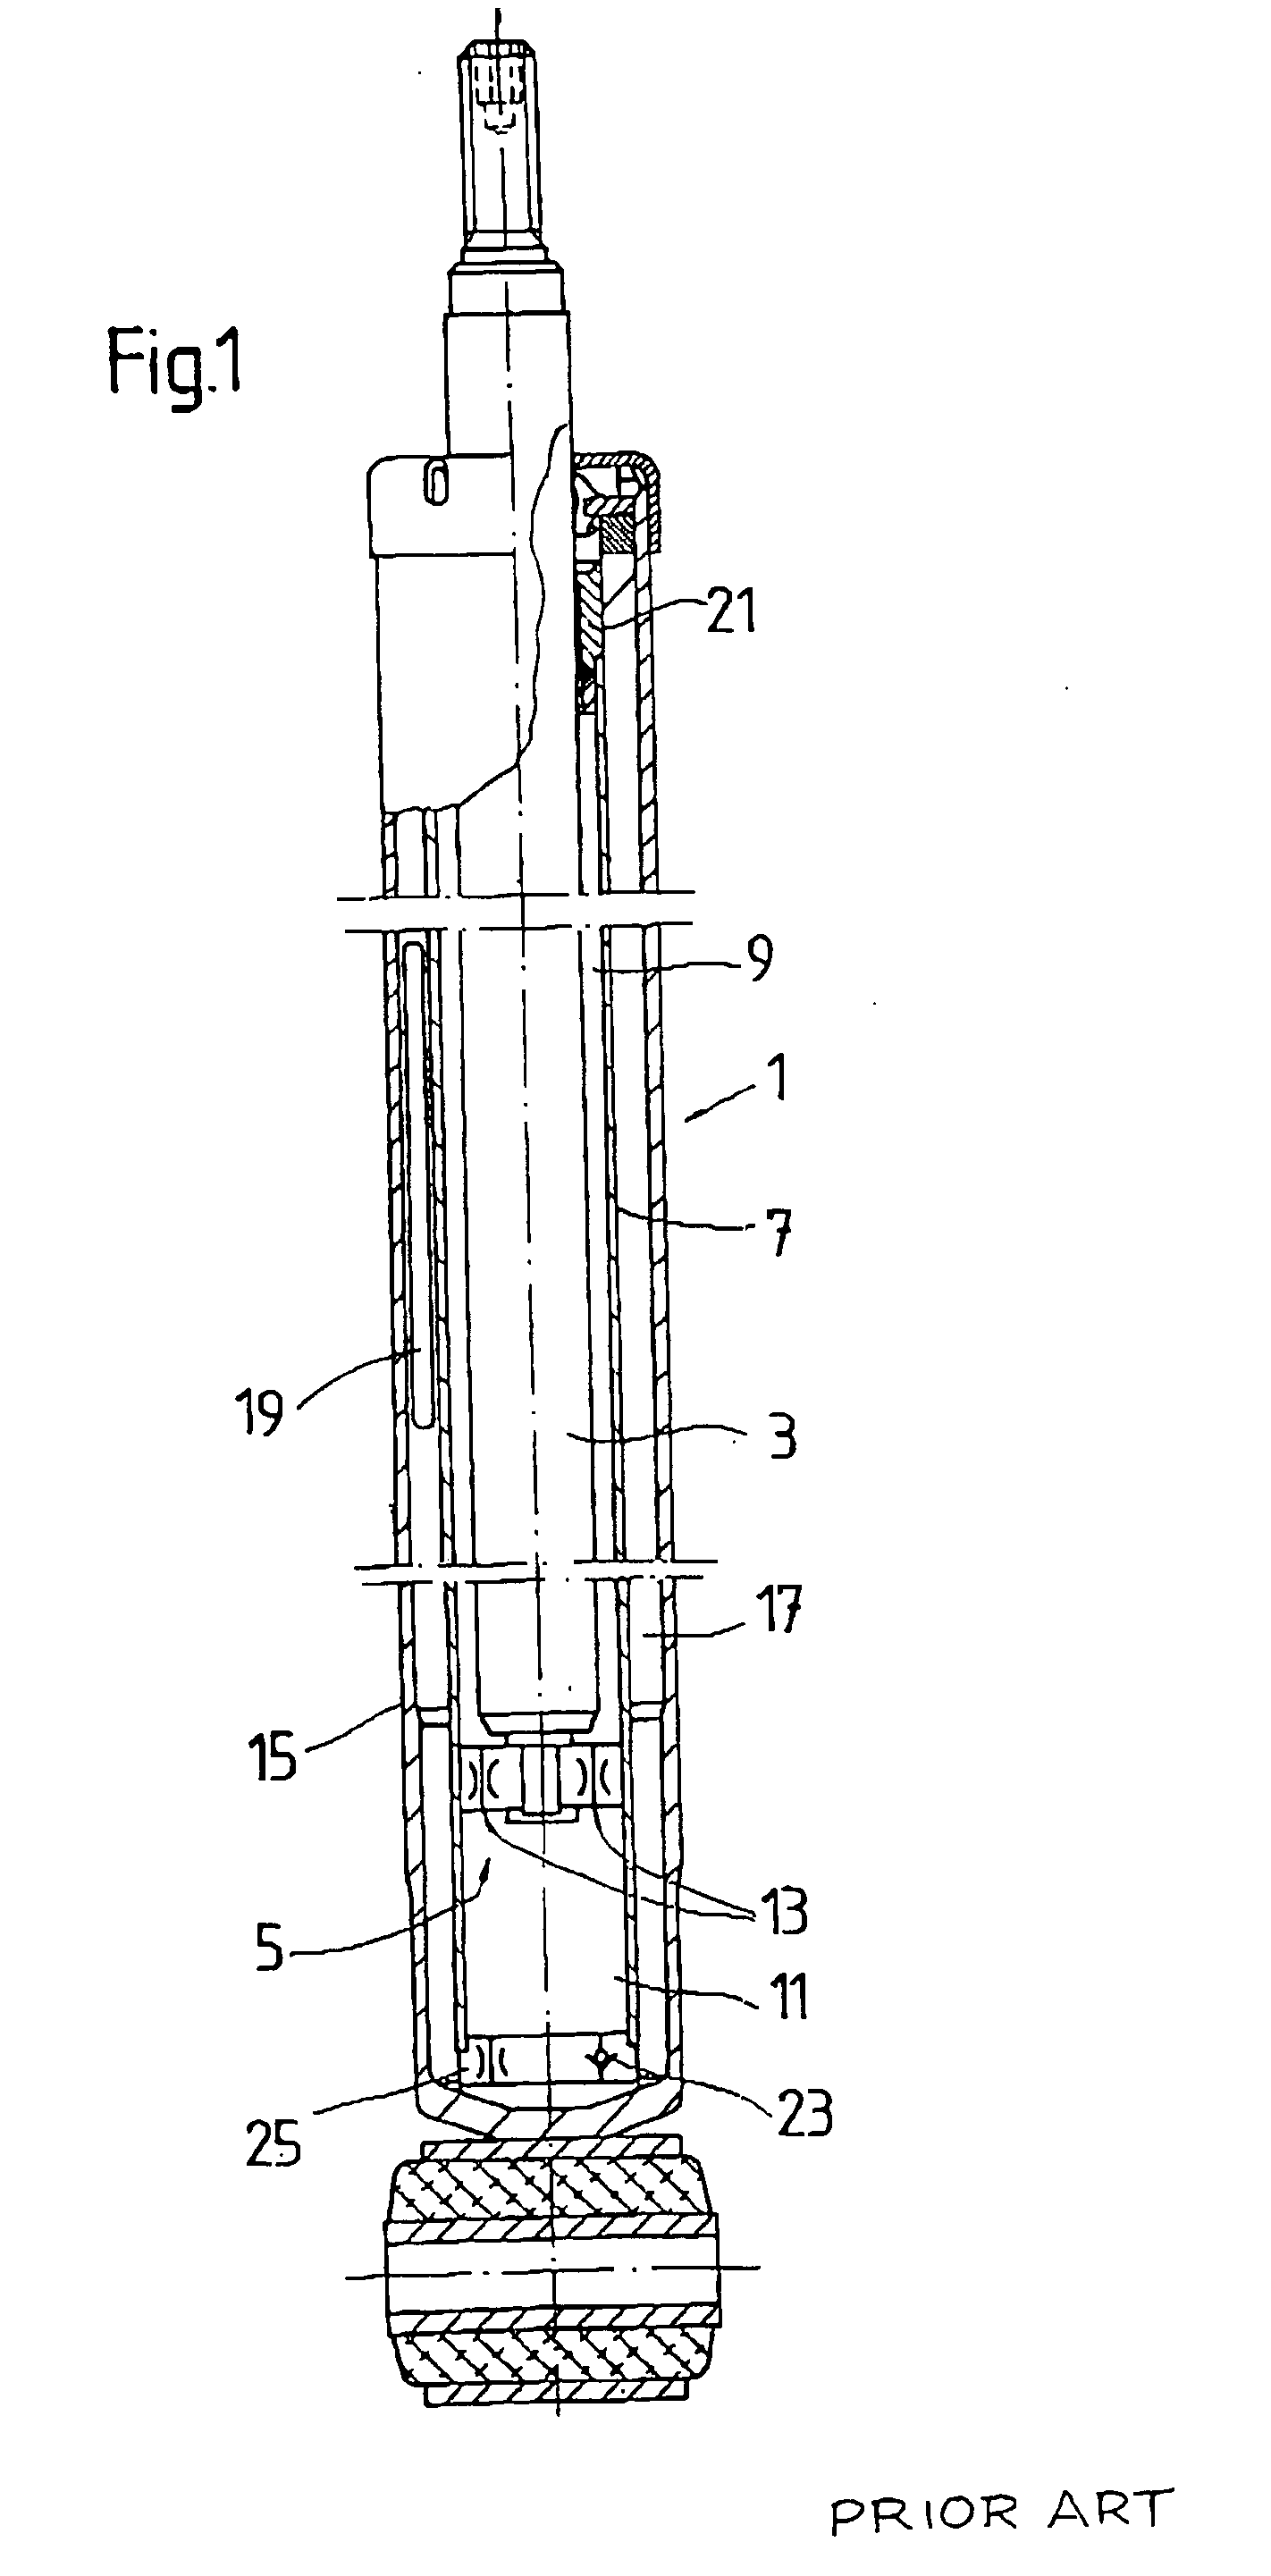 Filling valve for a pressure vessel